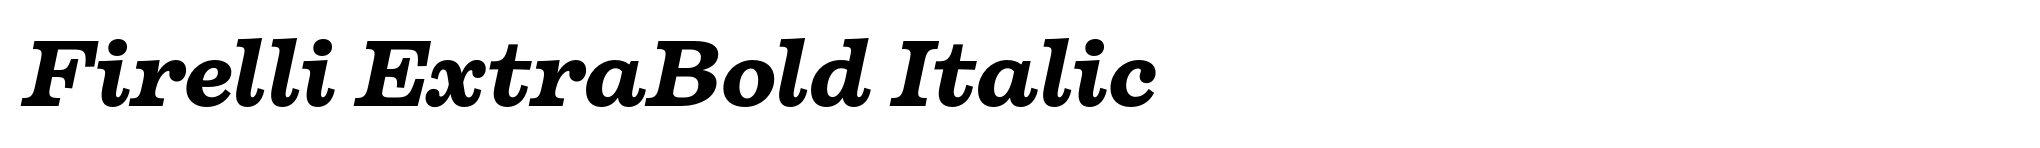 Firelli ExtraBold Italic image